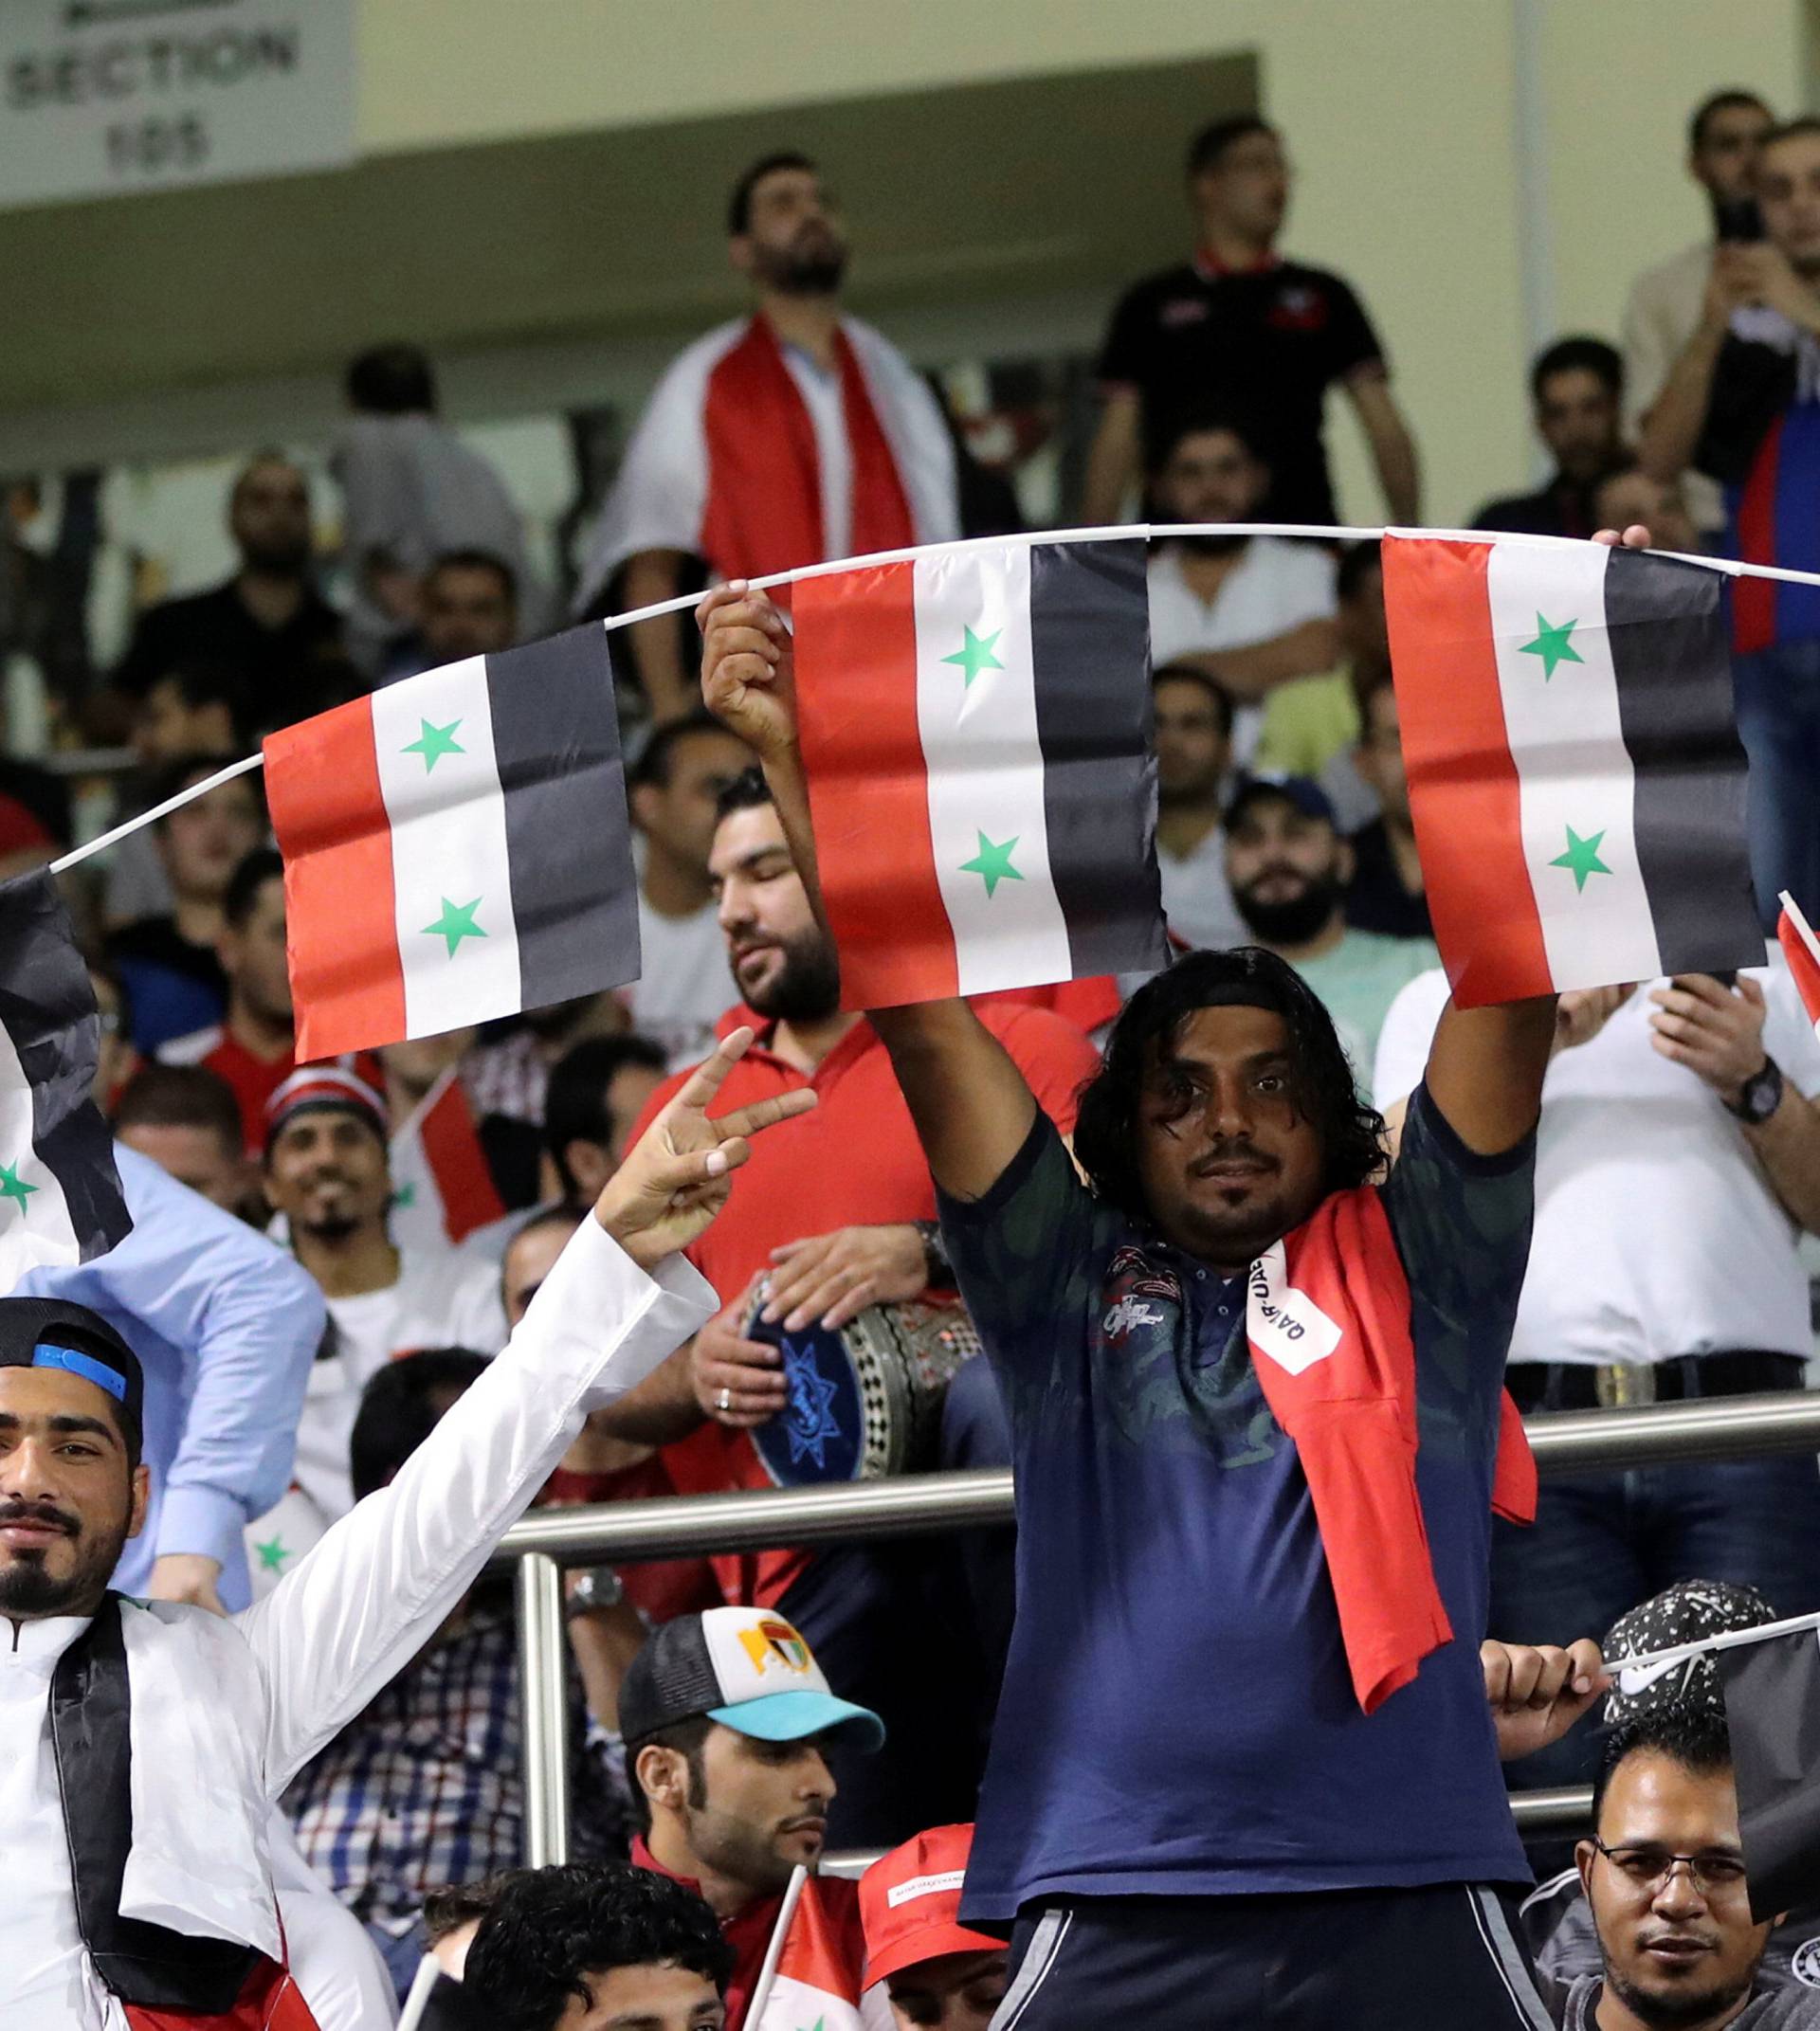 Football Soccer - Qatar v Syria - 2018 World Cup Qualifier